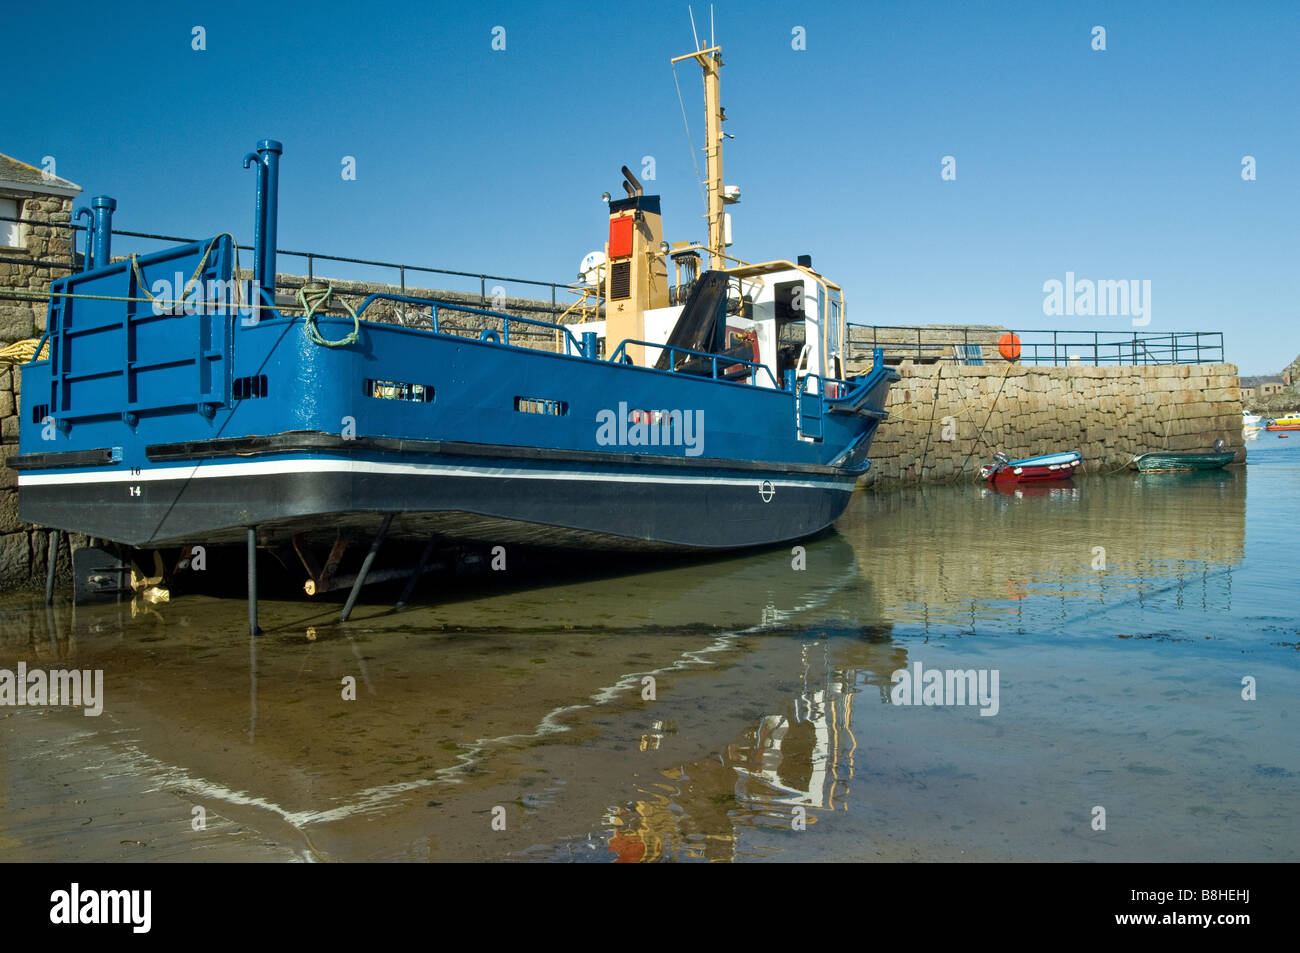 Gran barco azul amarrado junto a la pared del puerto de St Marys Islas Sorlingas Scillies Foto de stock